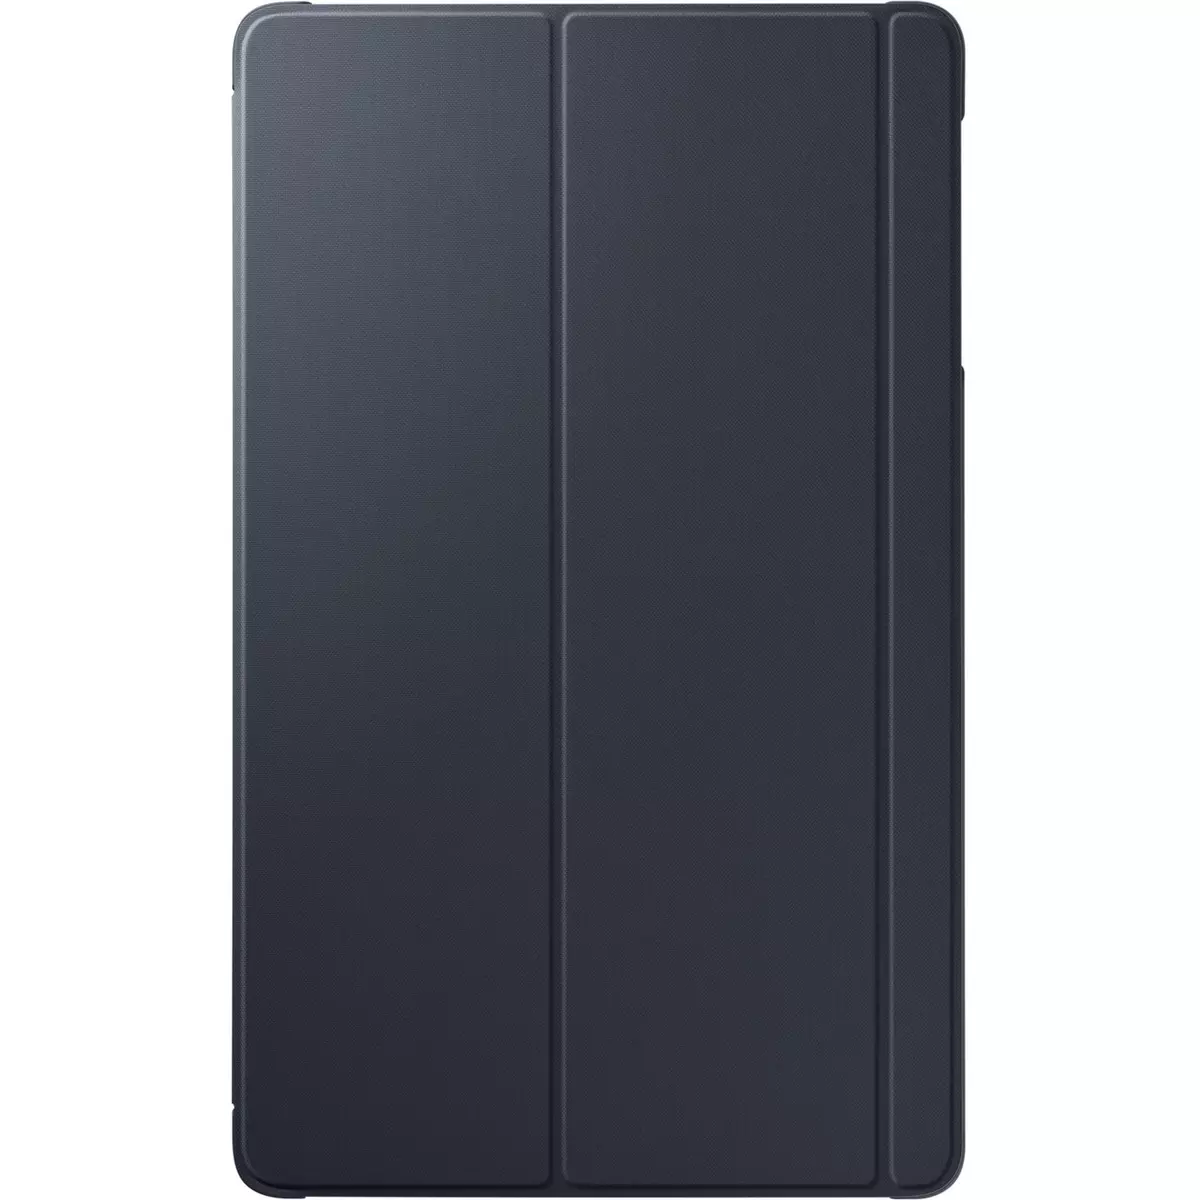 SAMSUNG Book Cover SF-BT510 pour Galaxy Tab A 2019 - Noir